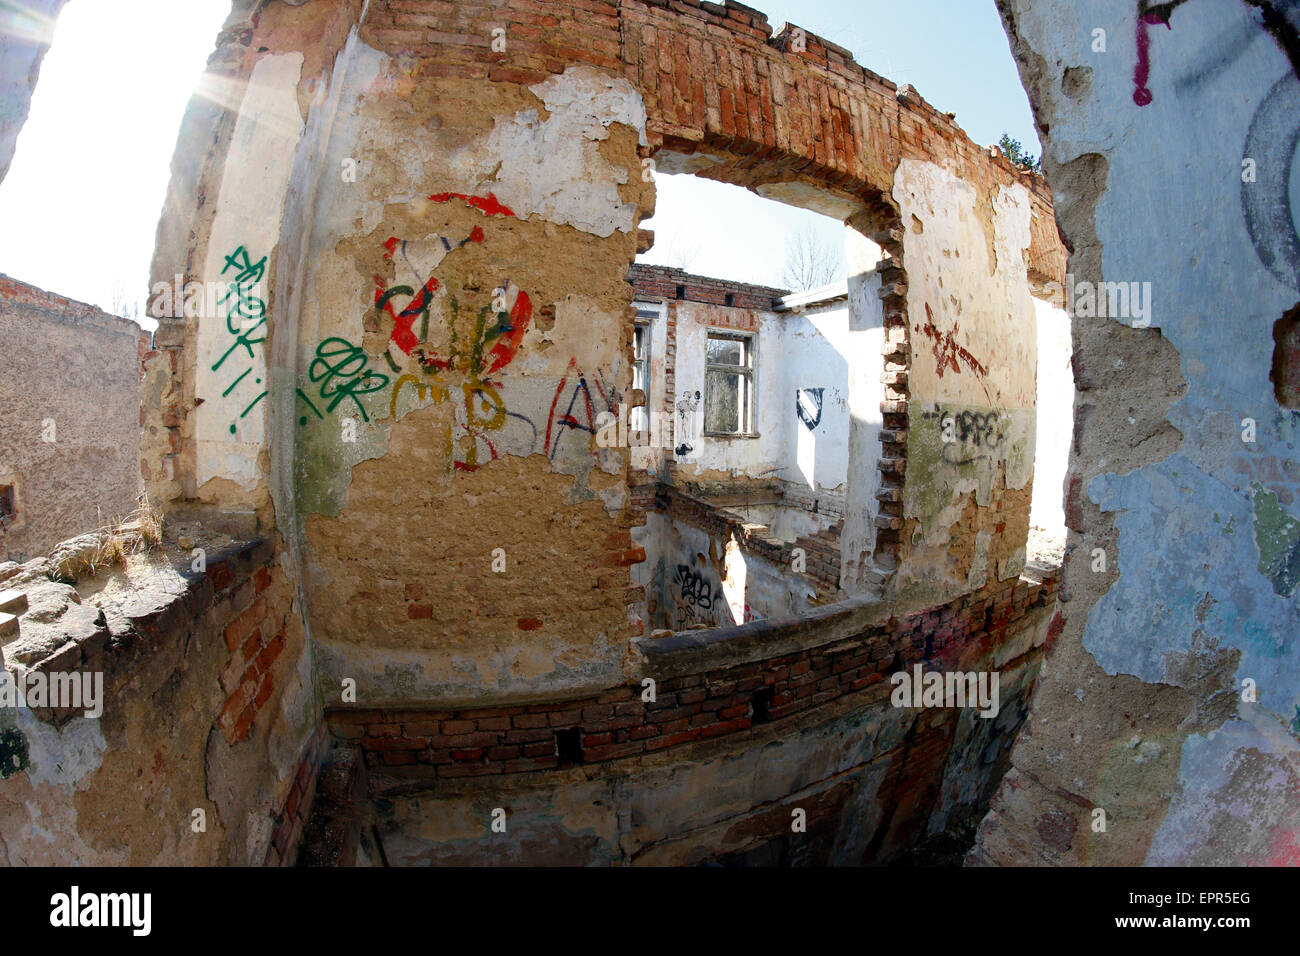 Bild von den Ruinen der alten Fabrik - Fish-Eye-Objektiv - Fisch Auge Objektiv Ansicht Stockfoto